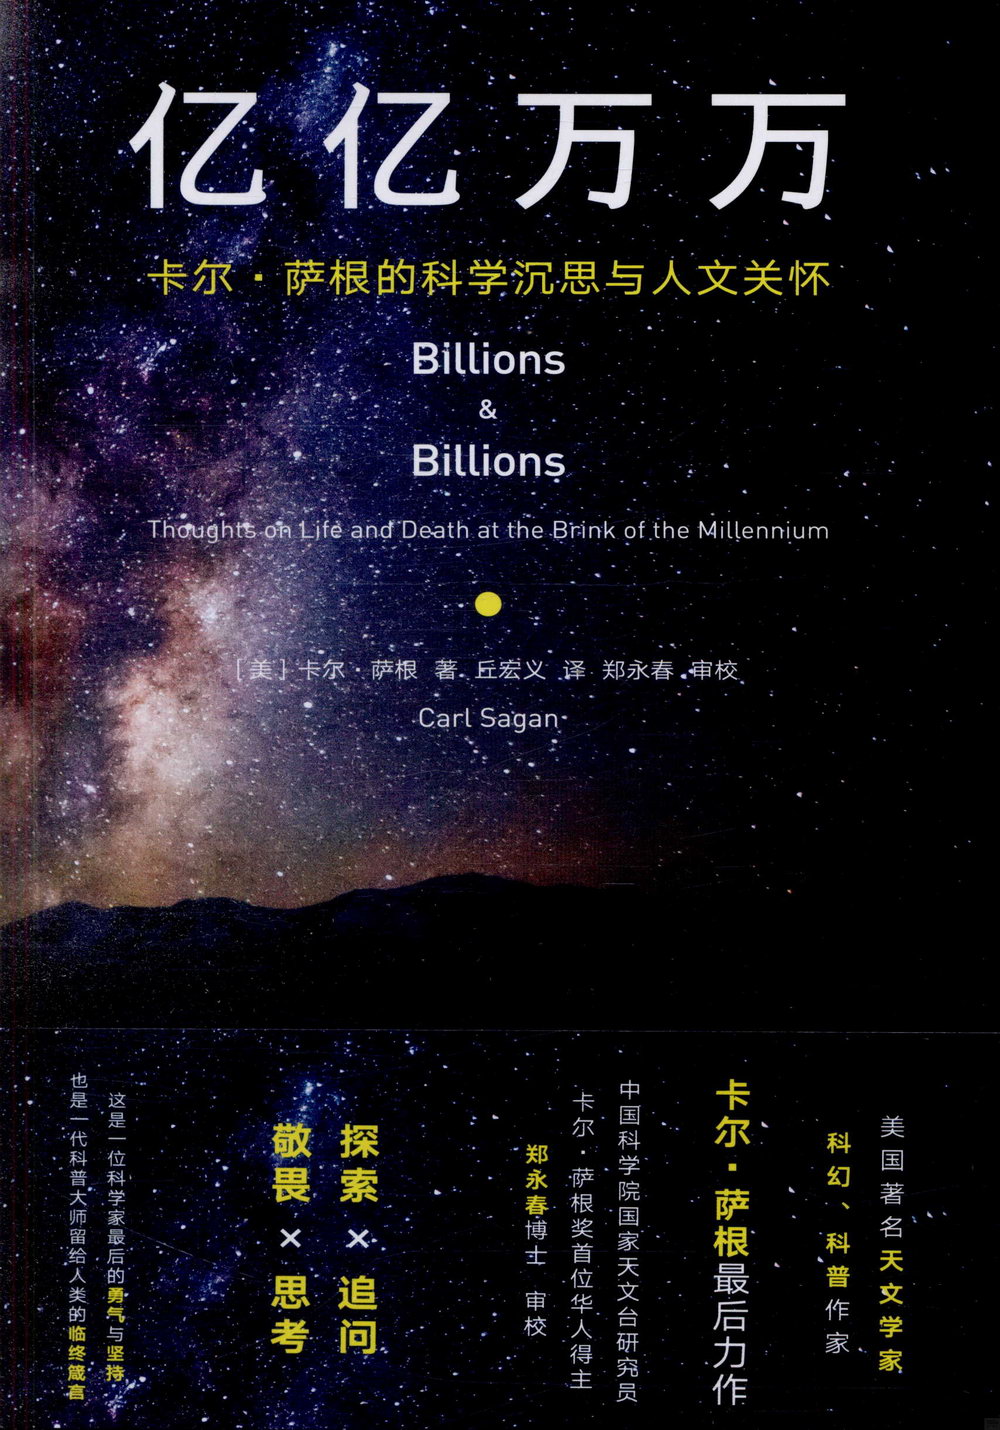 億億萬萬：卡爾·薩根的科學沉思與人文關懷